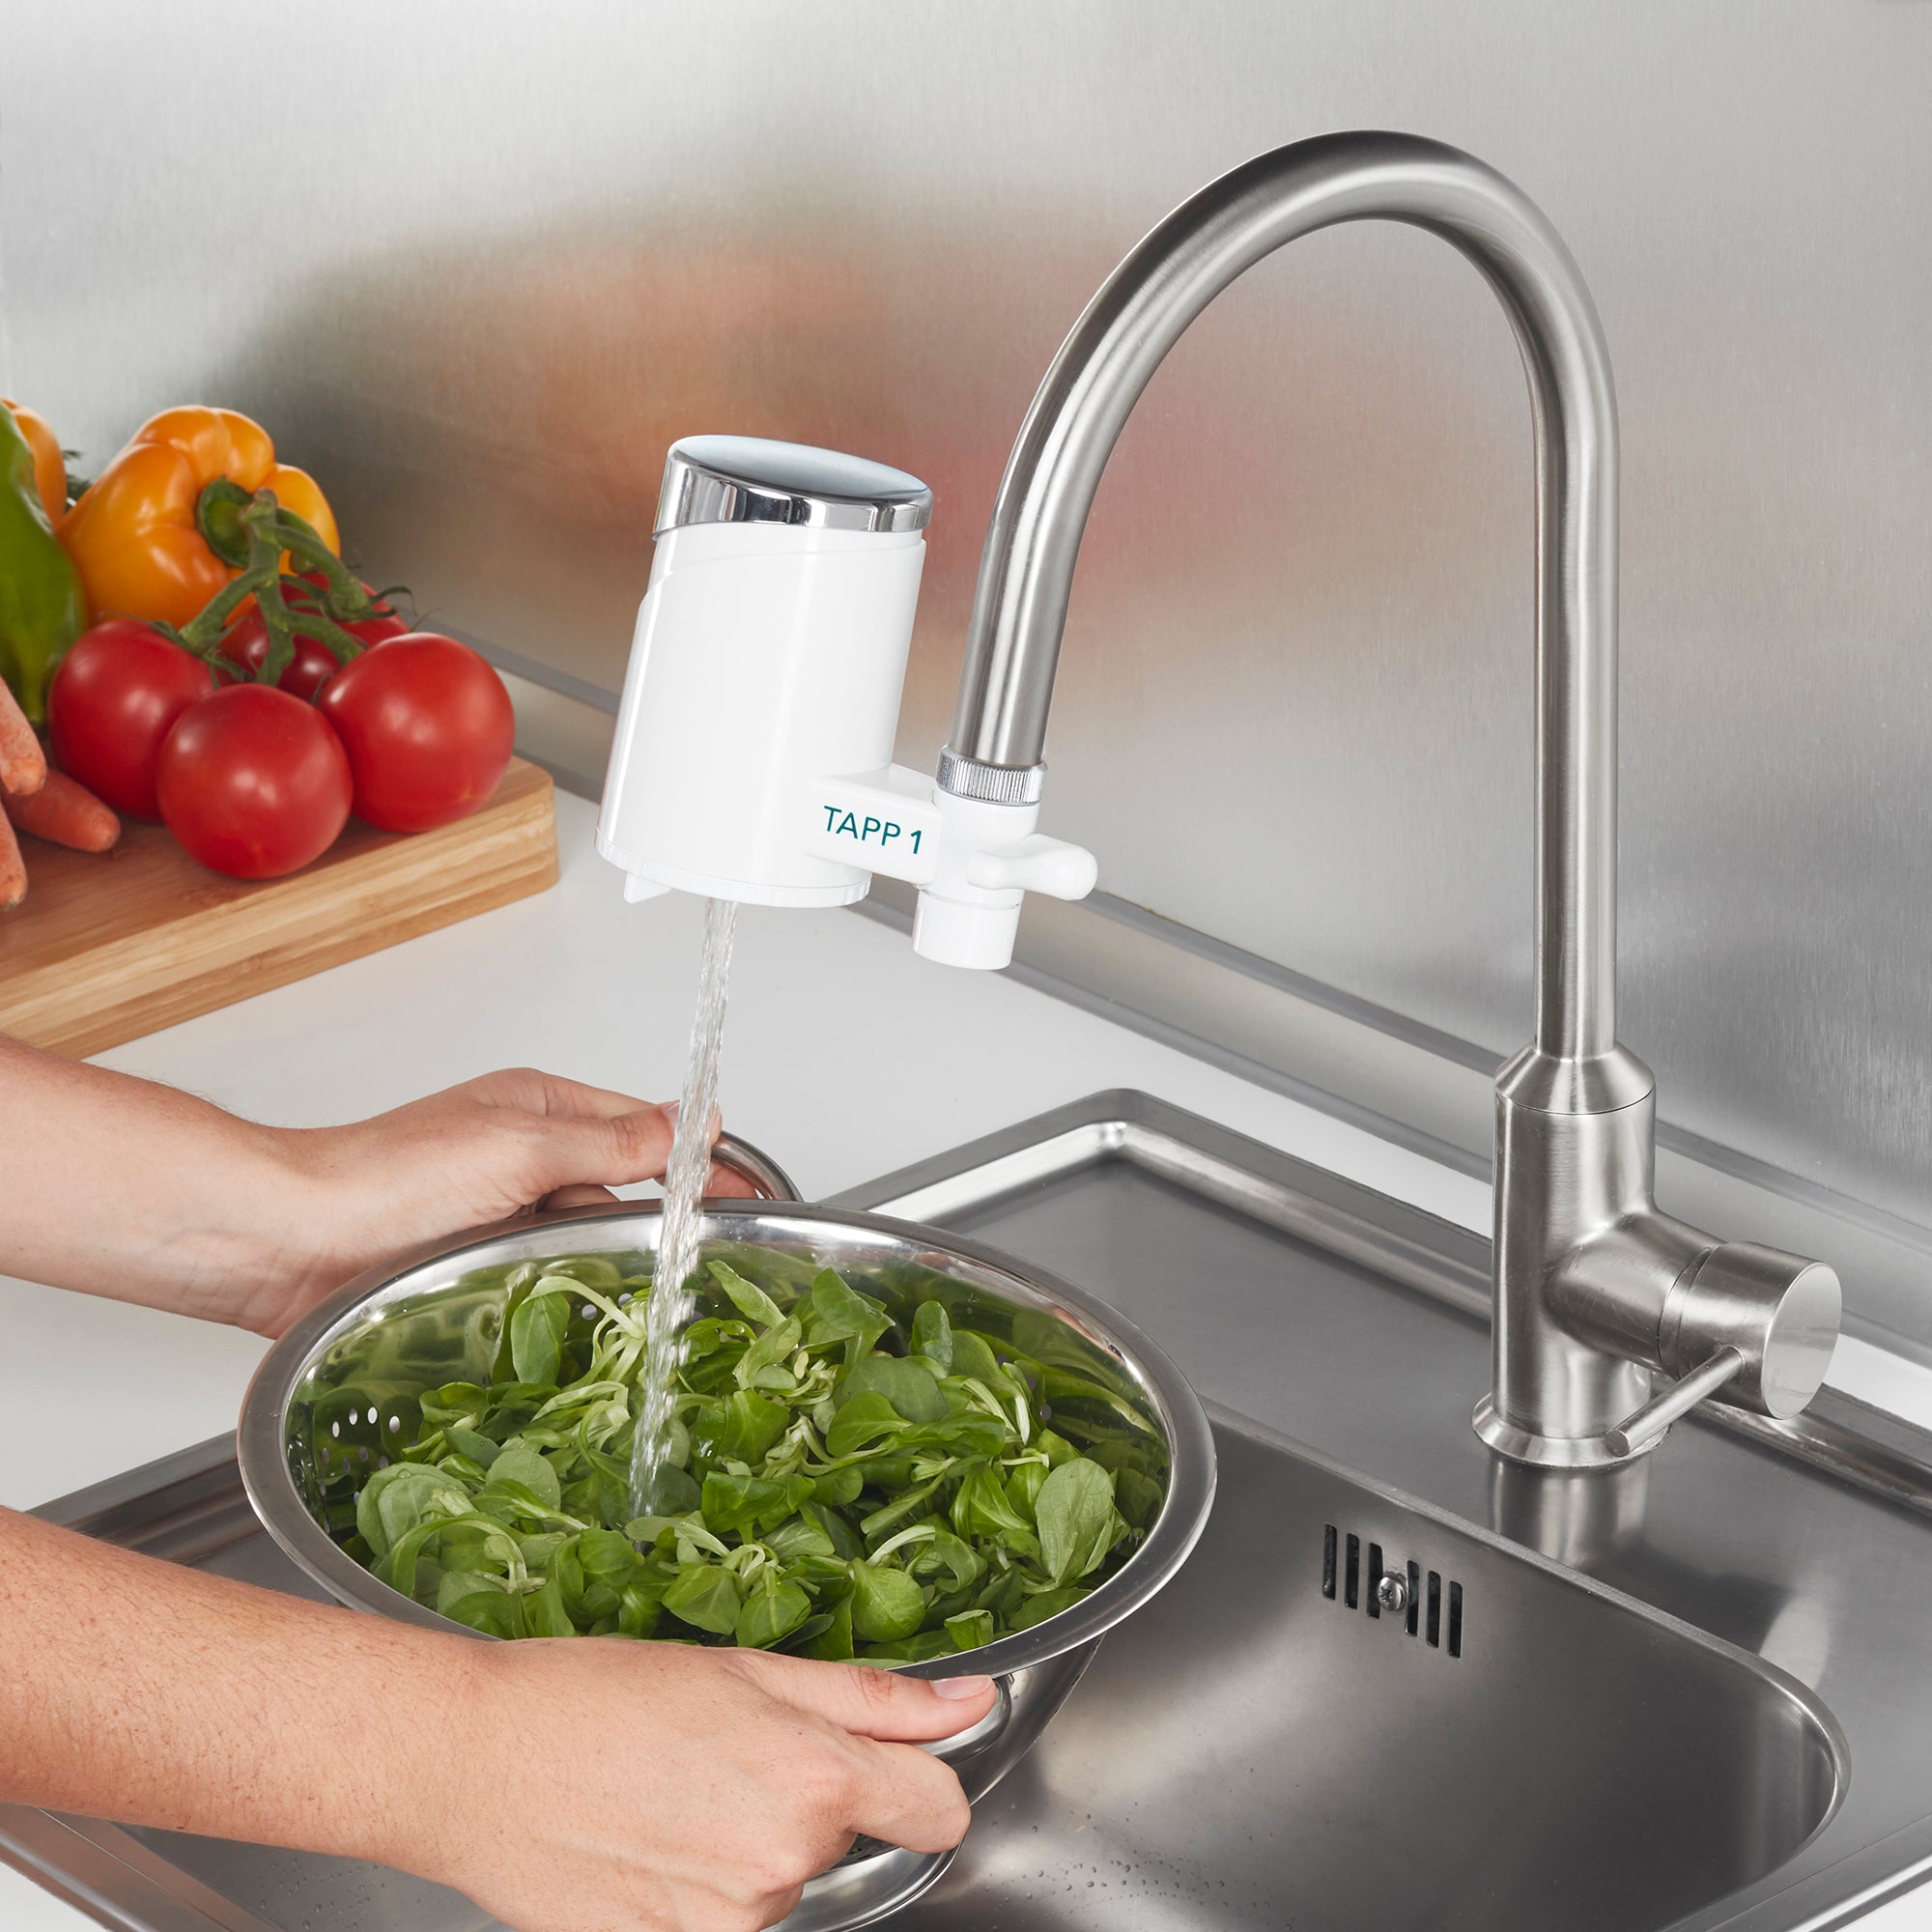 TAPP Ultra Faucet Filter: Đầu lọc nước tại vòi cao cấp với công nghệ lọc 5 tầng tiên tiến
